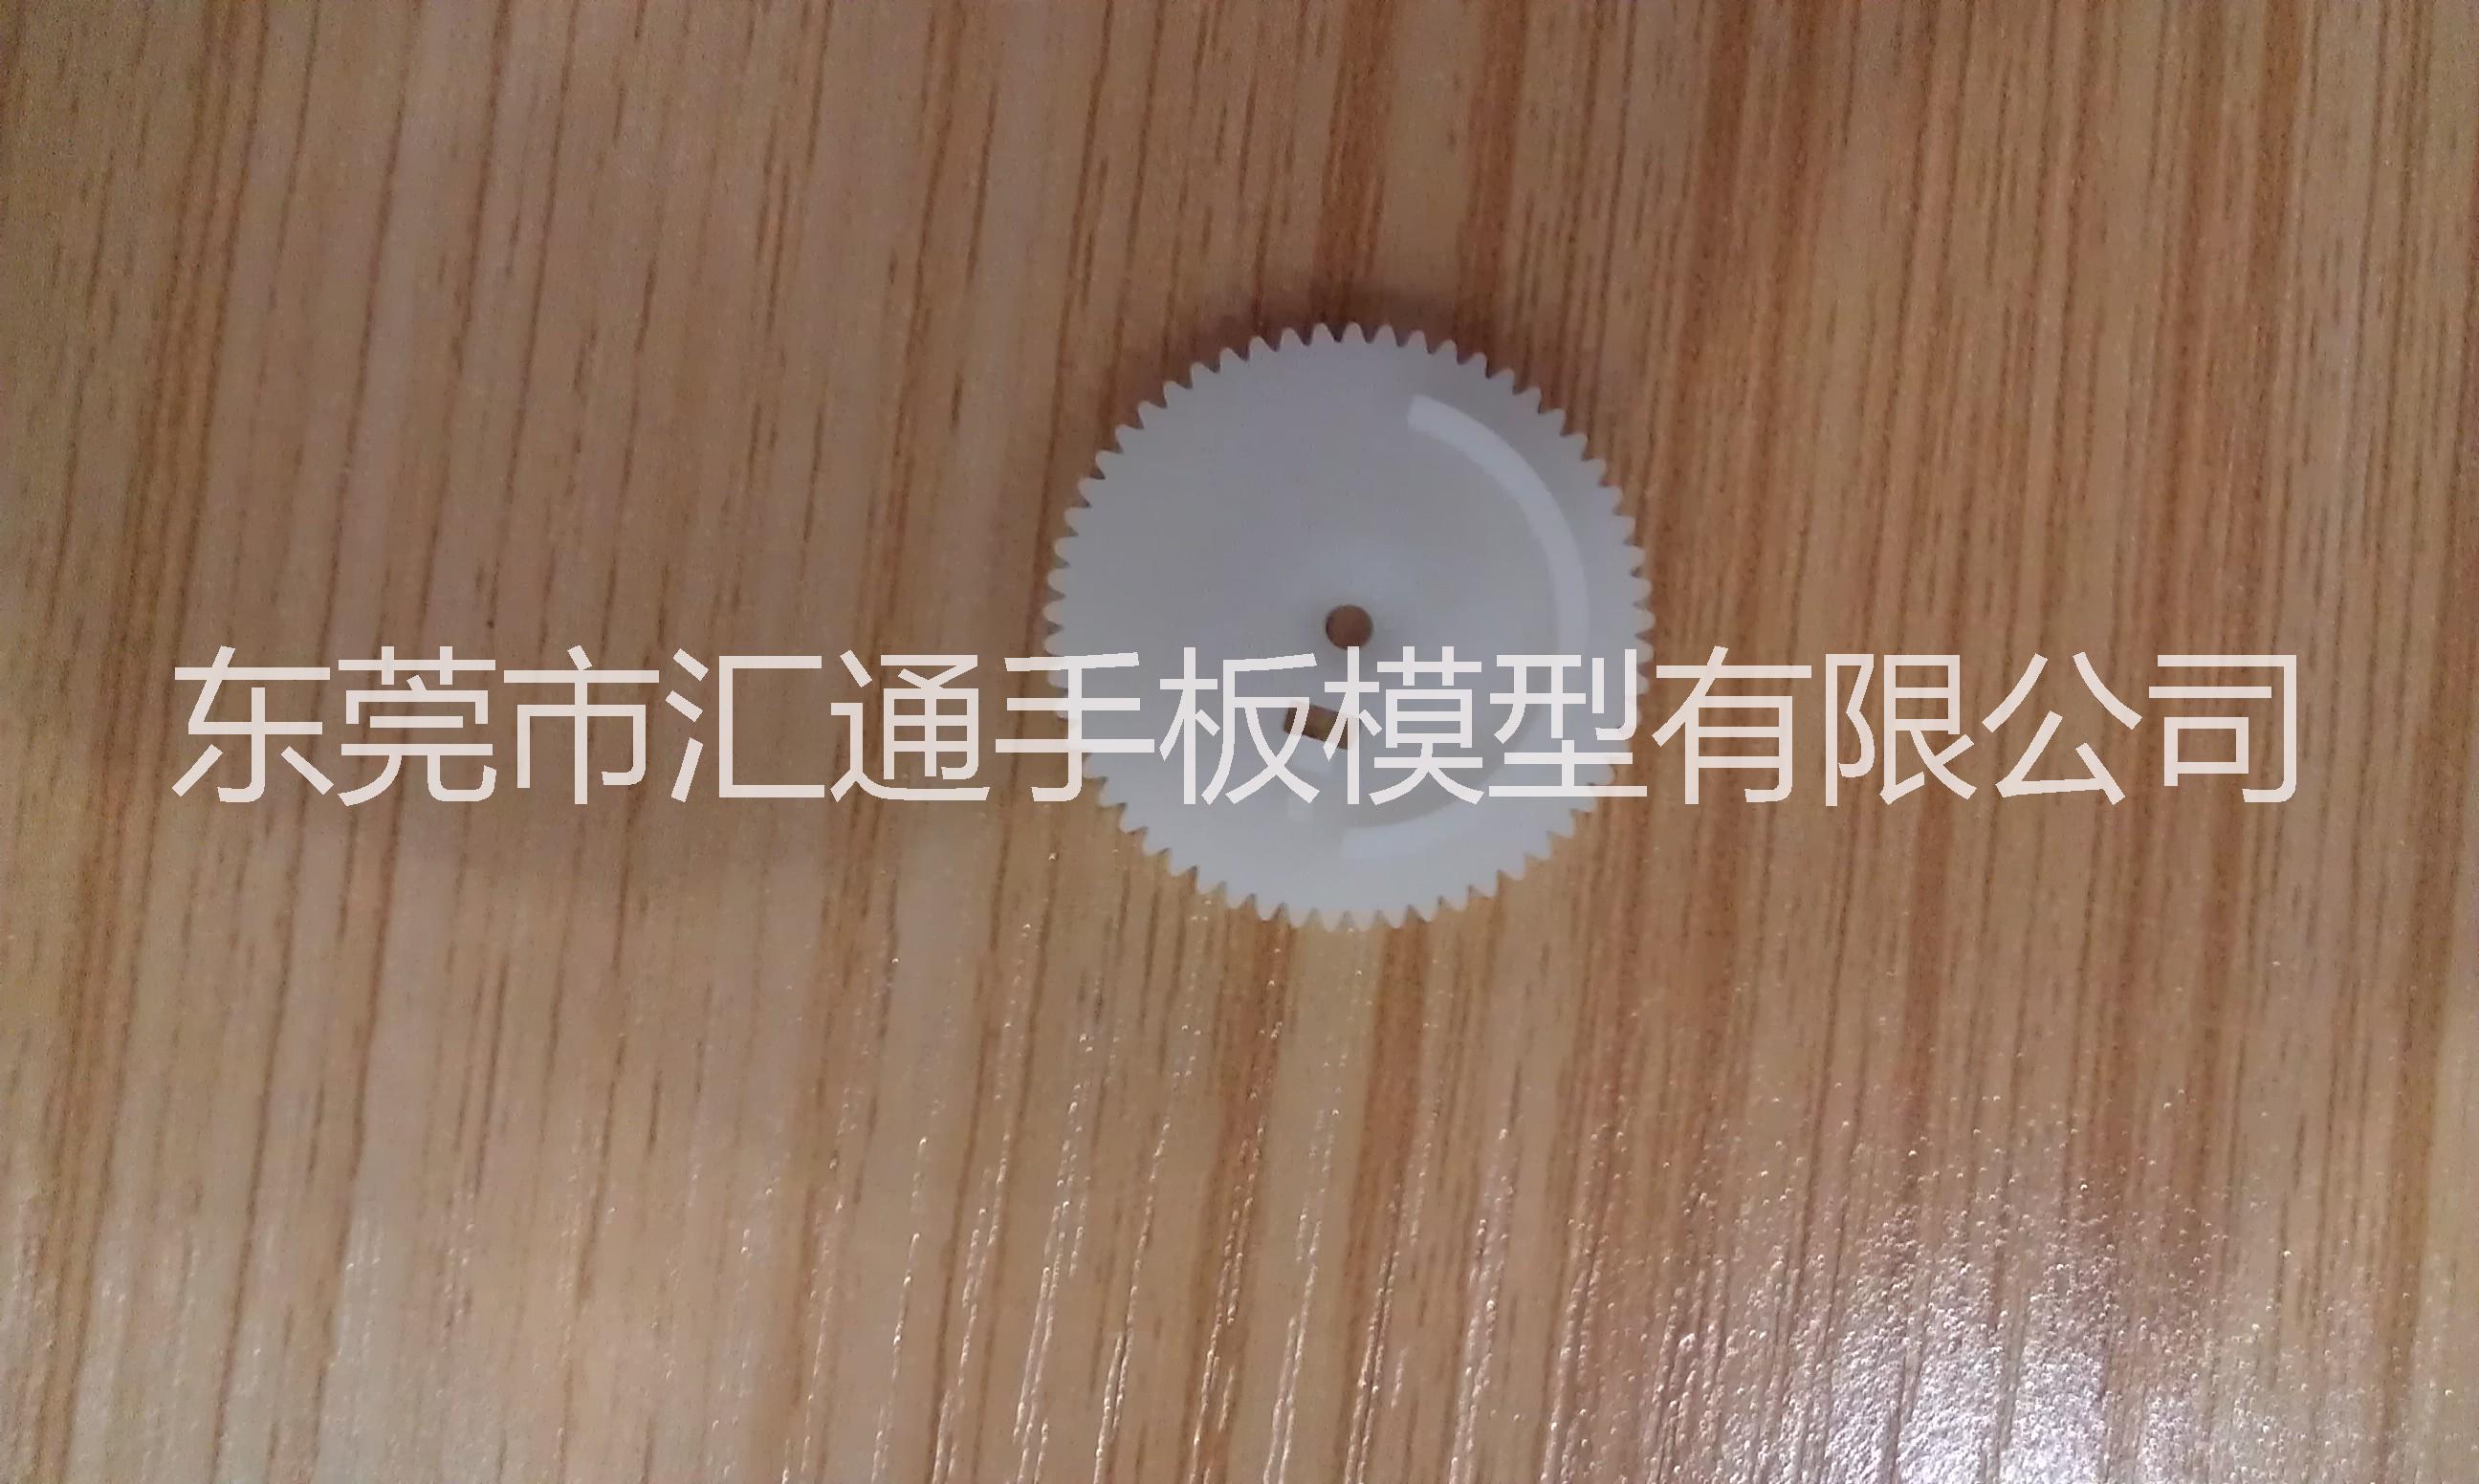 深圳市3d打印亚克力 钣金手板模型制作厂家手板模具 上海3d打印服务 3d打印亚克力 钣金手板模型制作